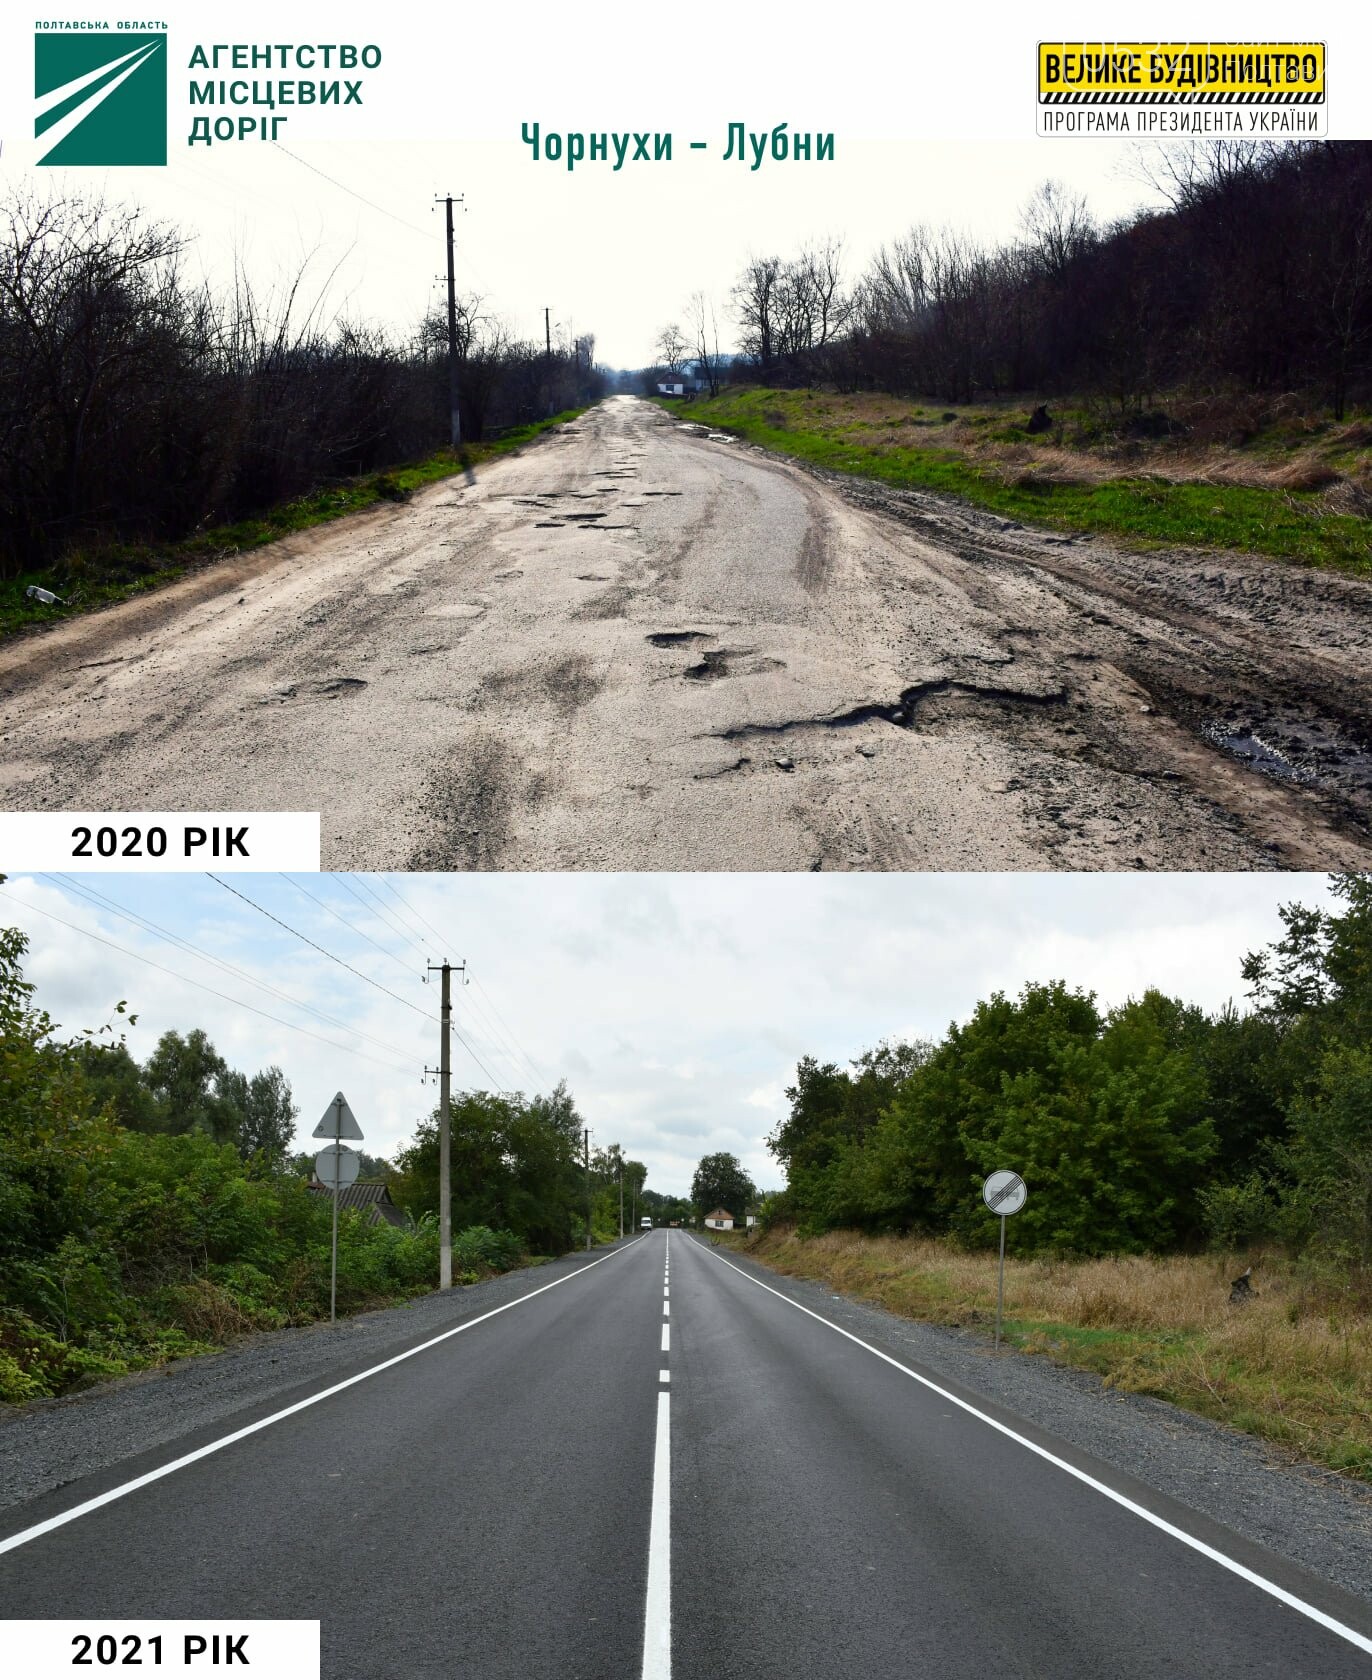 «Була яма на ямі» - на Полтавщині повністю відремонтували 35 кілометрів місцевої дороги, фото-1